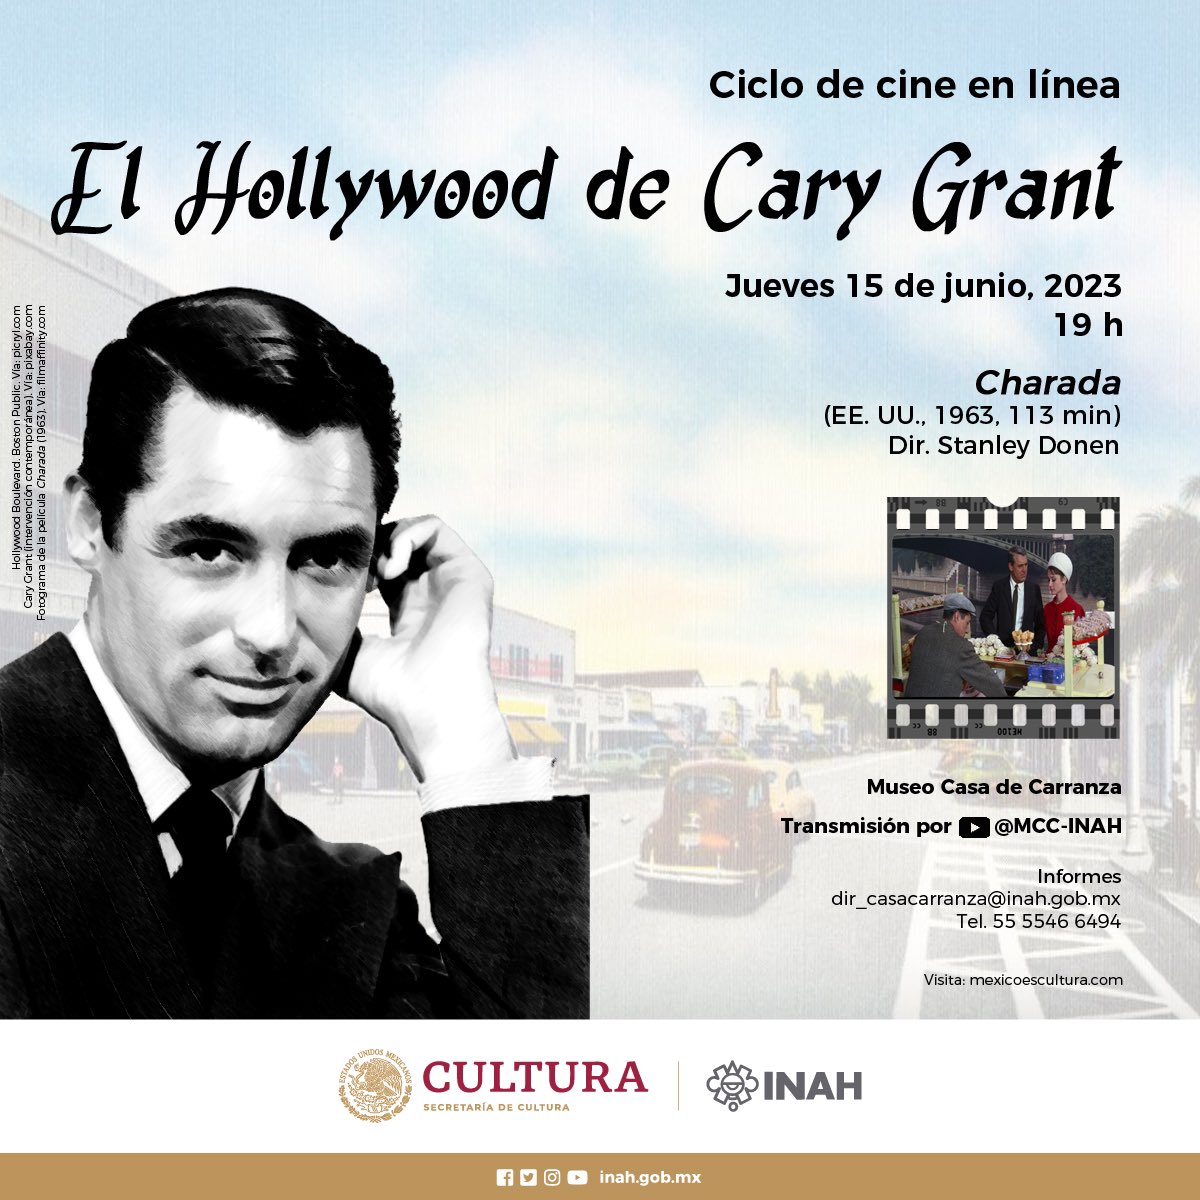 #INAH #MuseoCasaDeCarranza #Cine #Película #LaSospecha  #Película #Películas #CineEnLínea #carygrant #CaryGrant